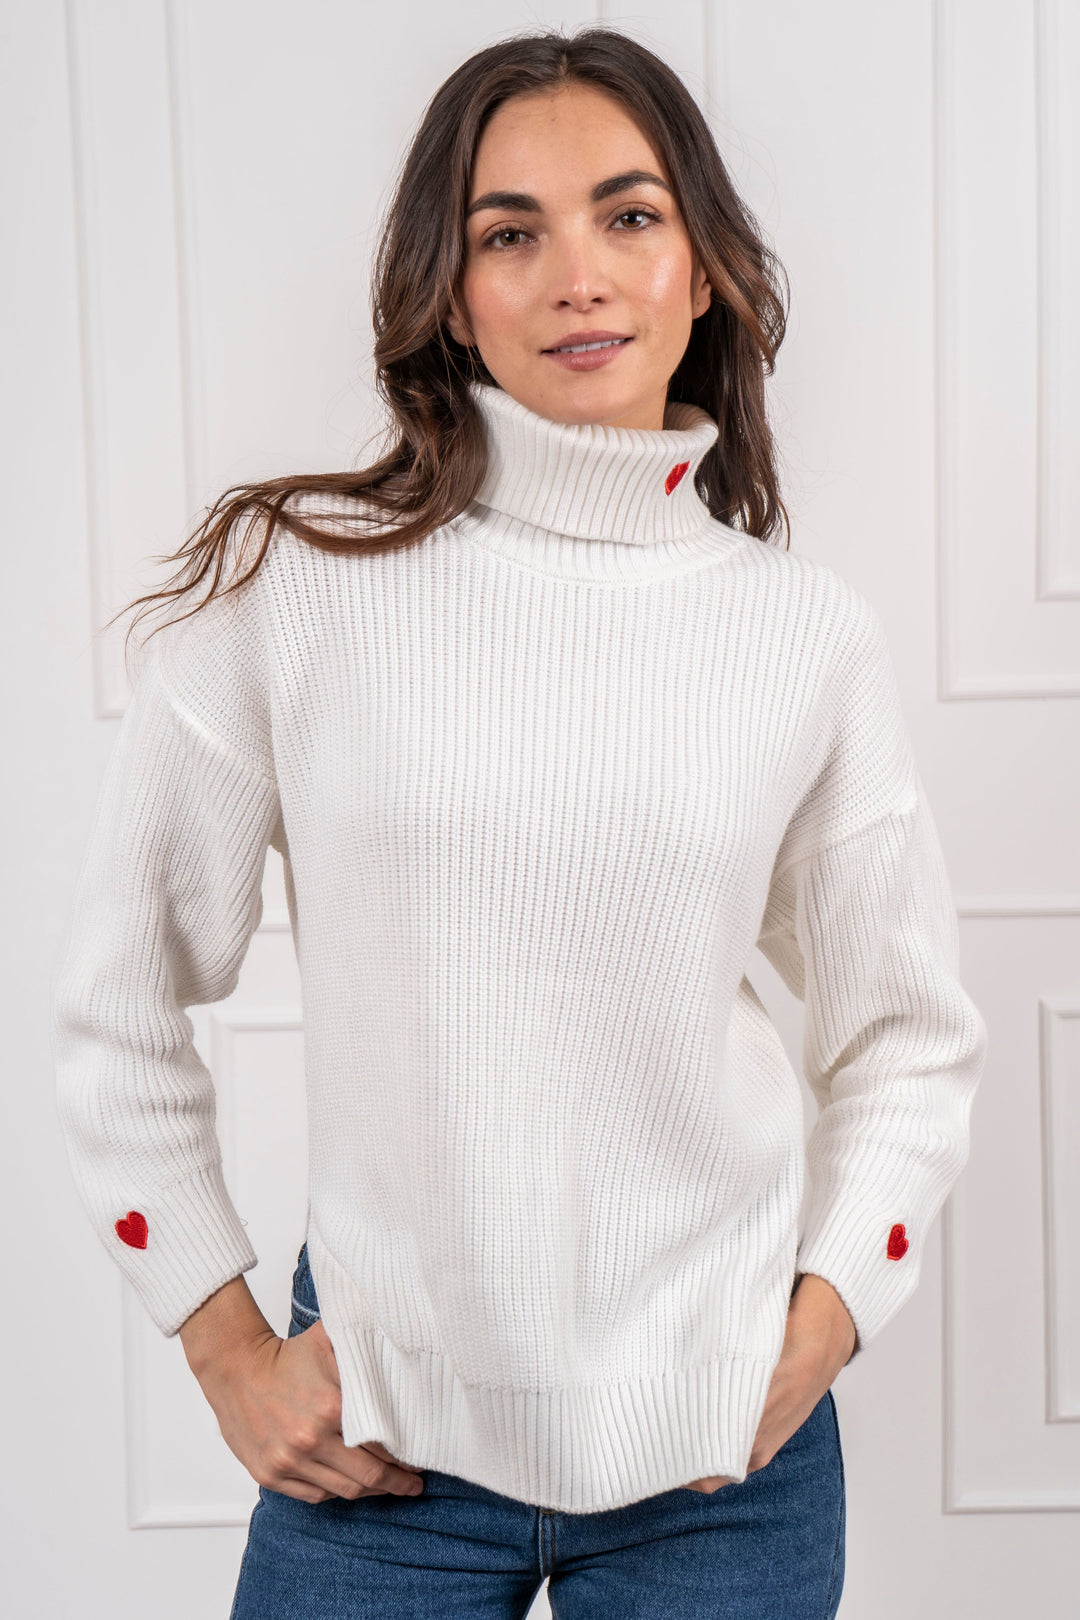 Suéter cuello tortuga blanco para mujer con detalles de corazón rojo bordado en mangas y cuello